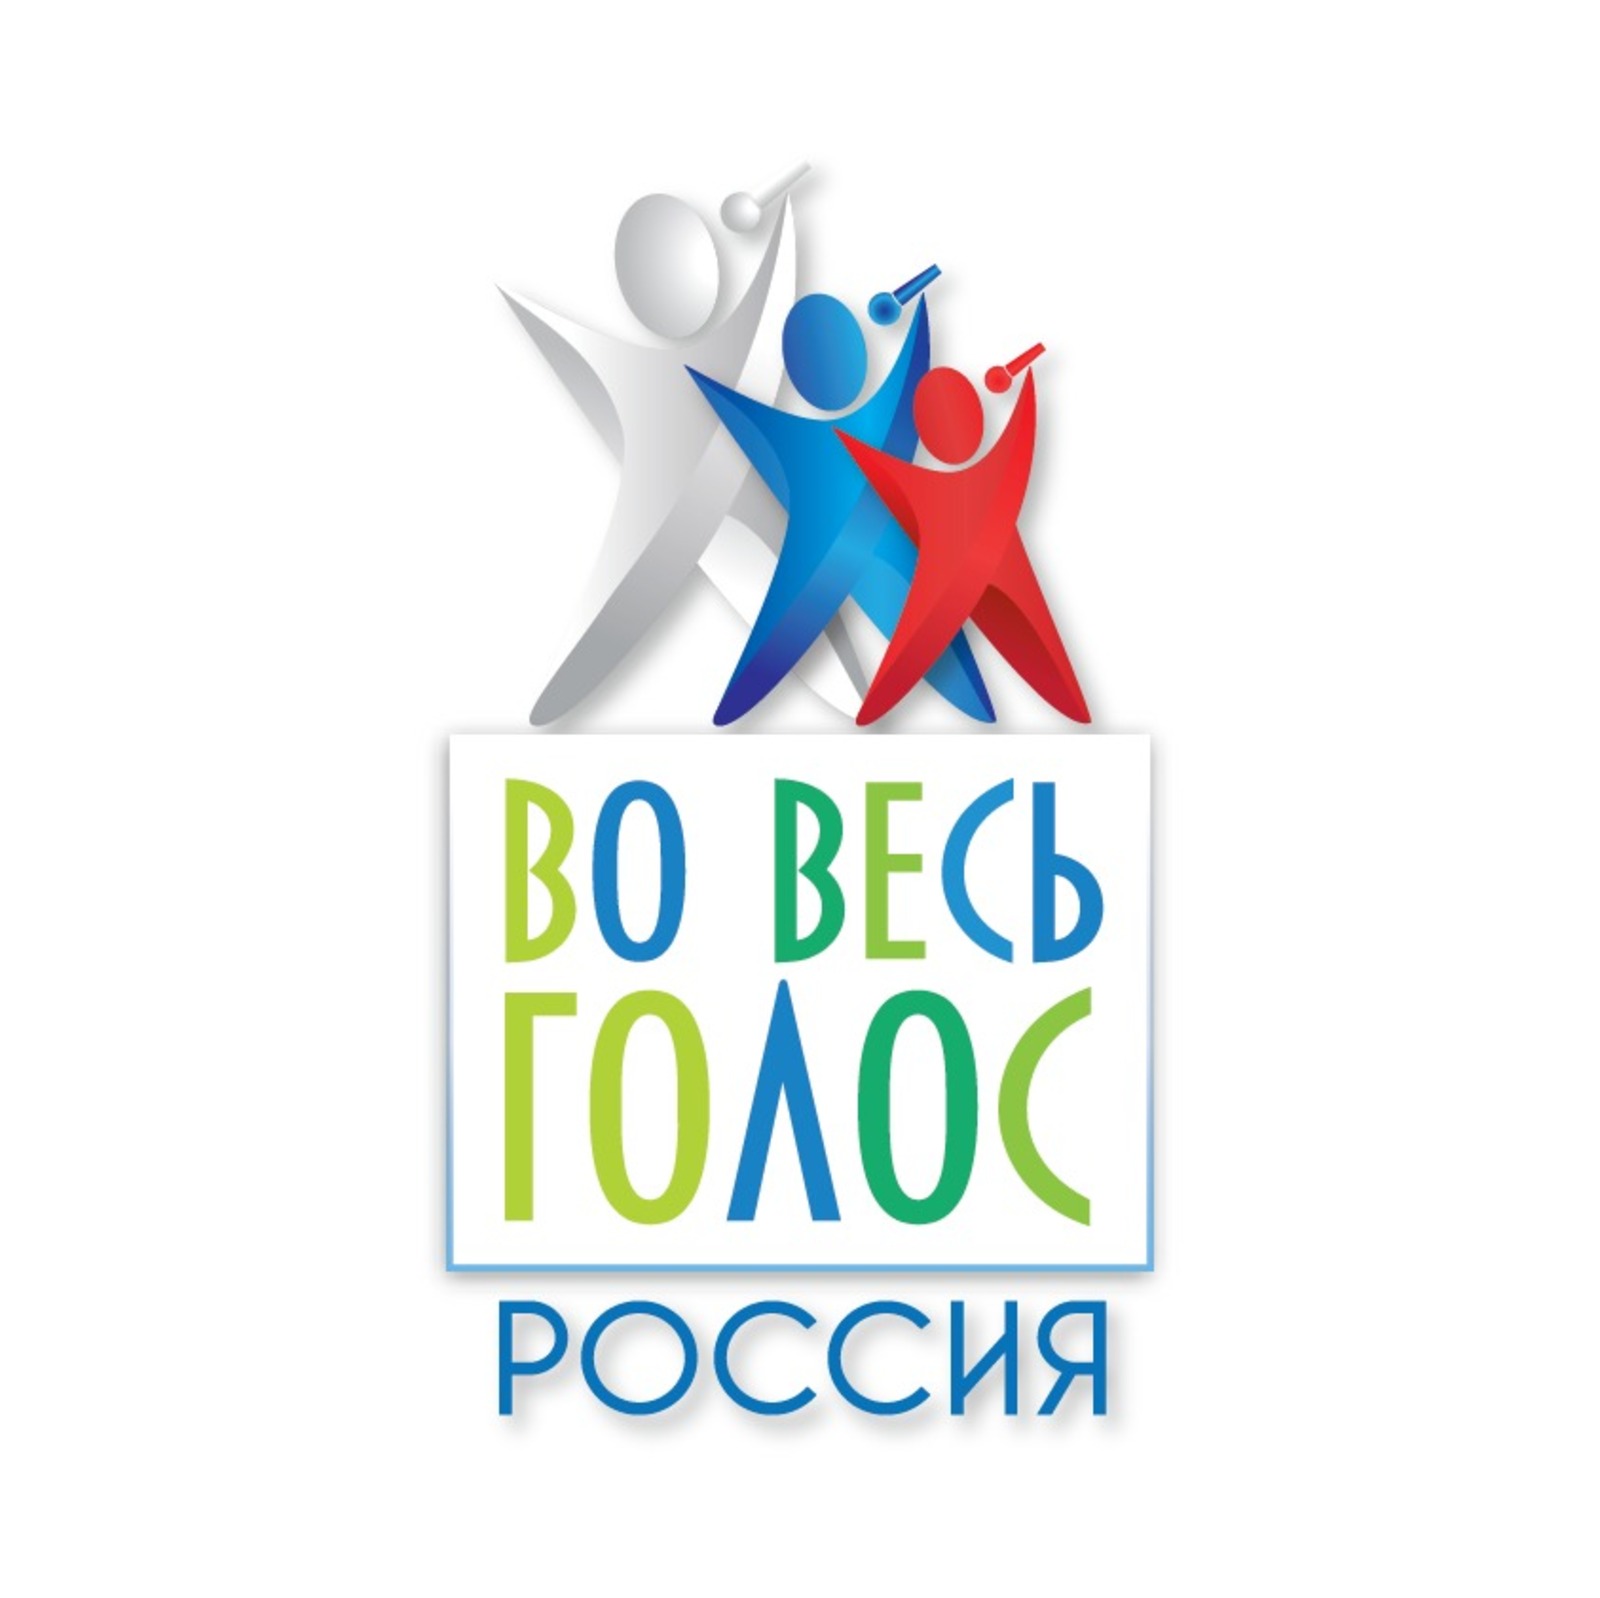 Вокальный конкурс «Во весь голос Россия» ищет юные таланты со всей страны